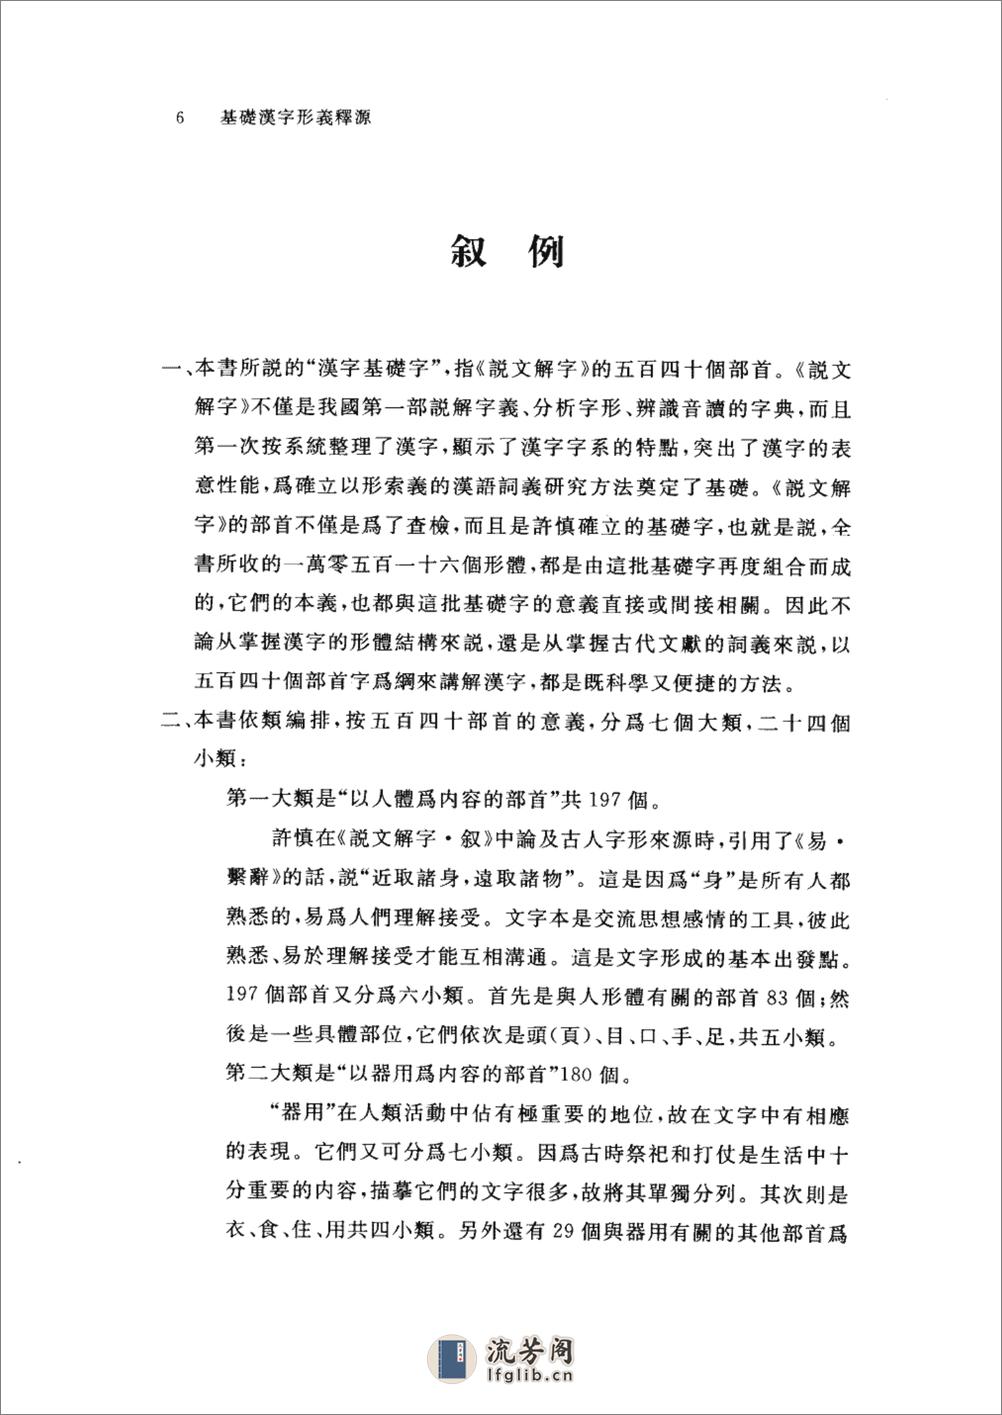 基础汉字形义释源 - 第15页预览图